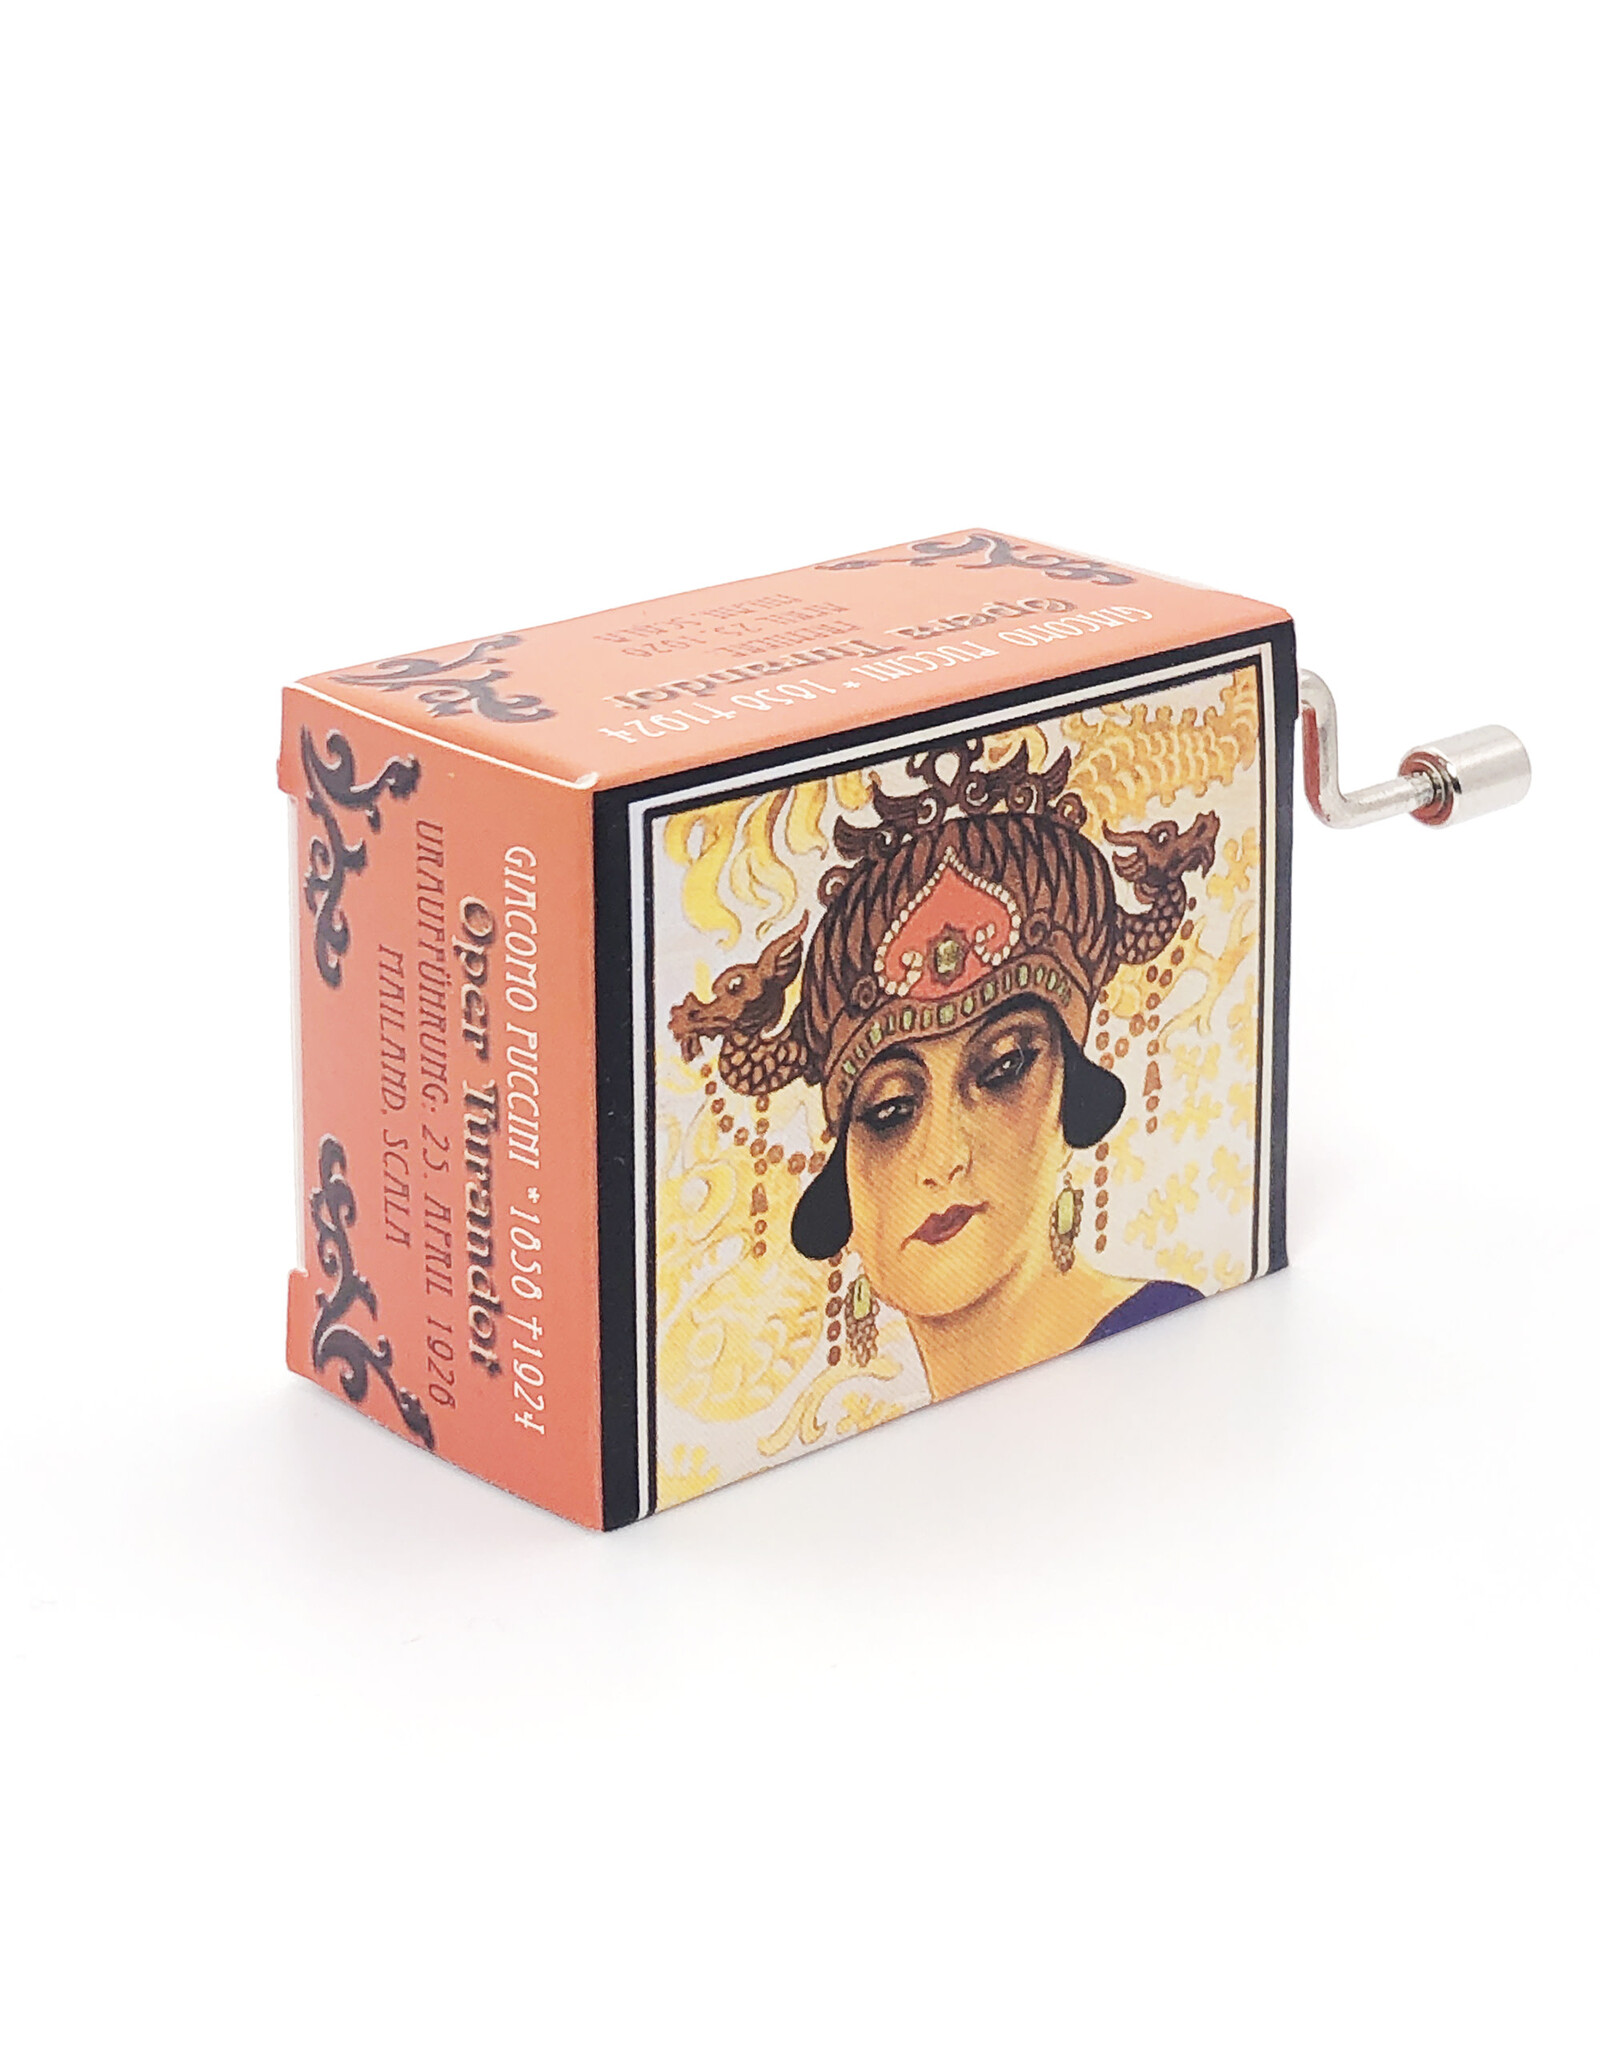 Fridolin Turandot Nessun Dorma Puccini Operas Music Box